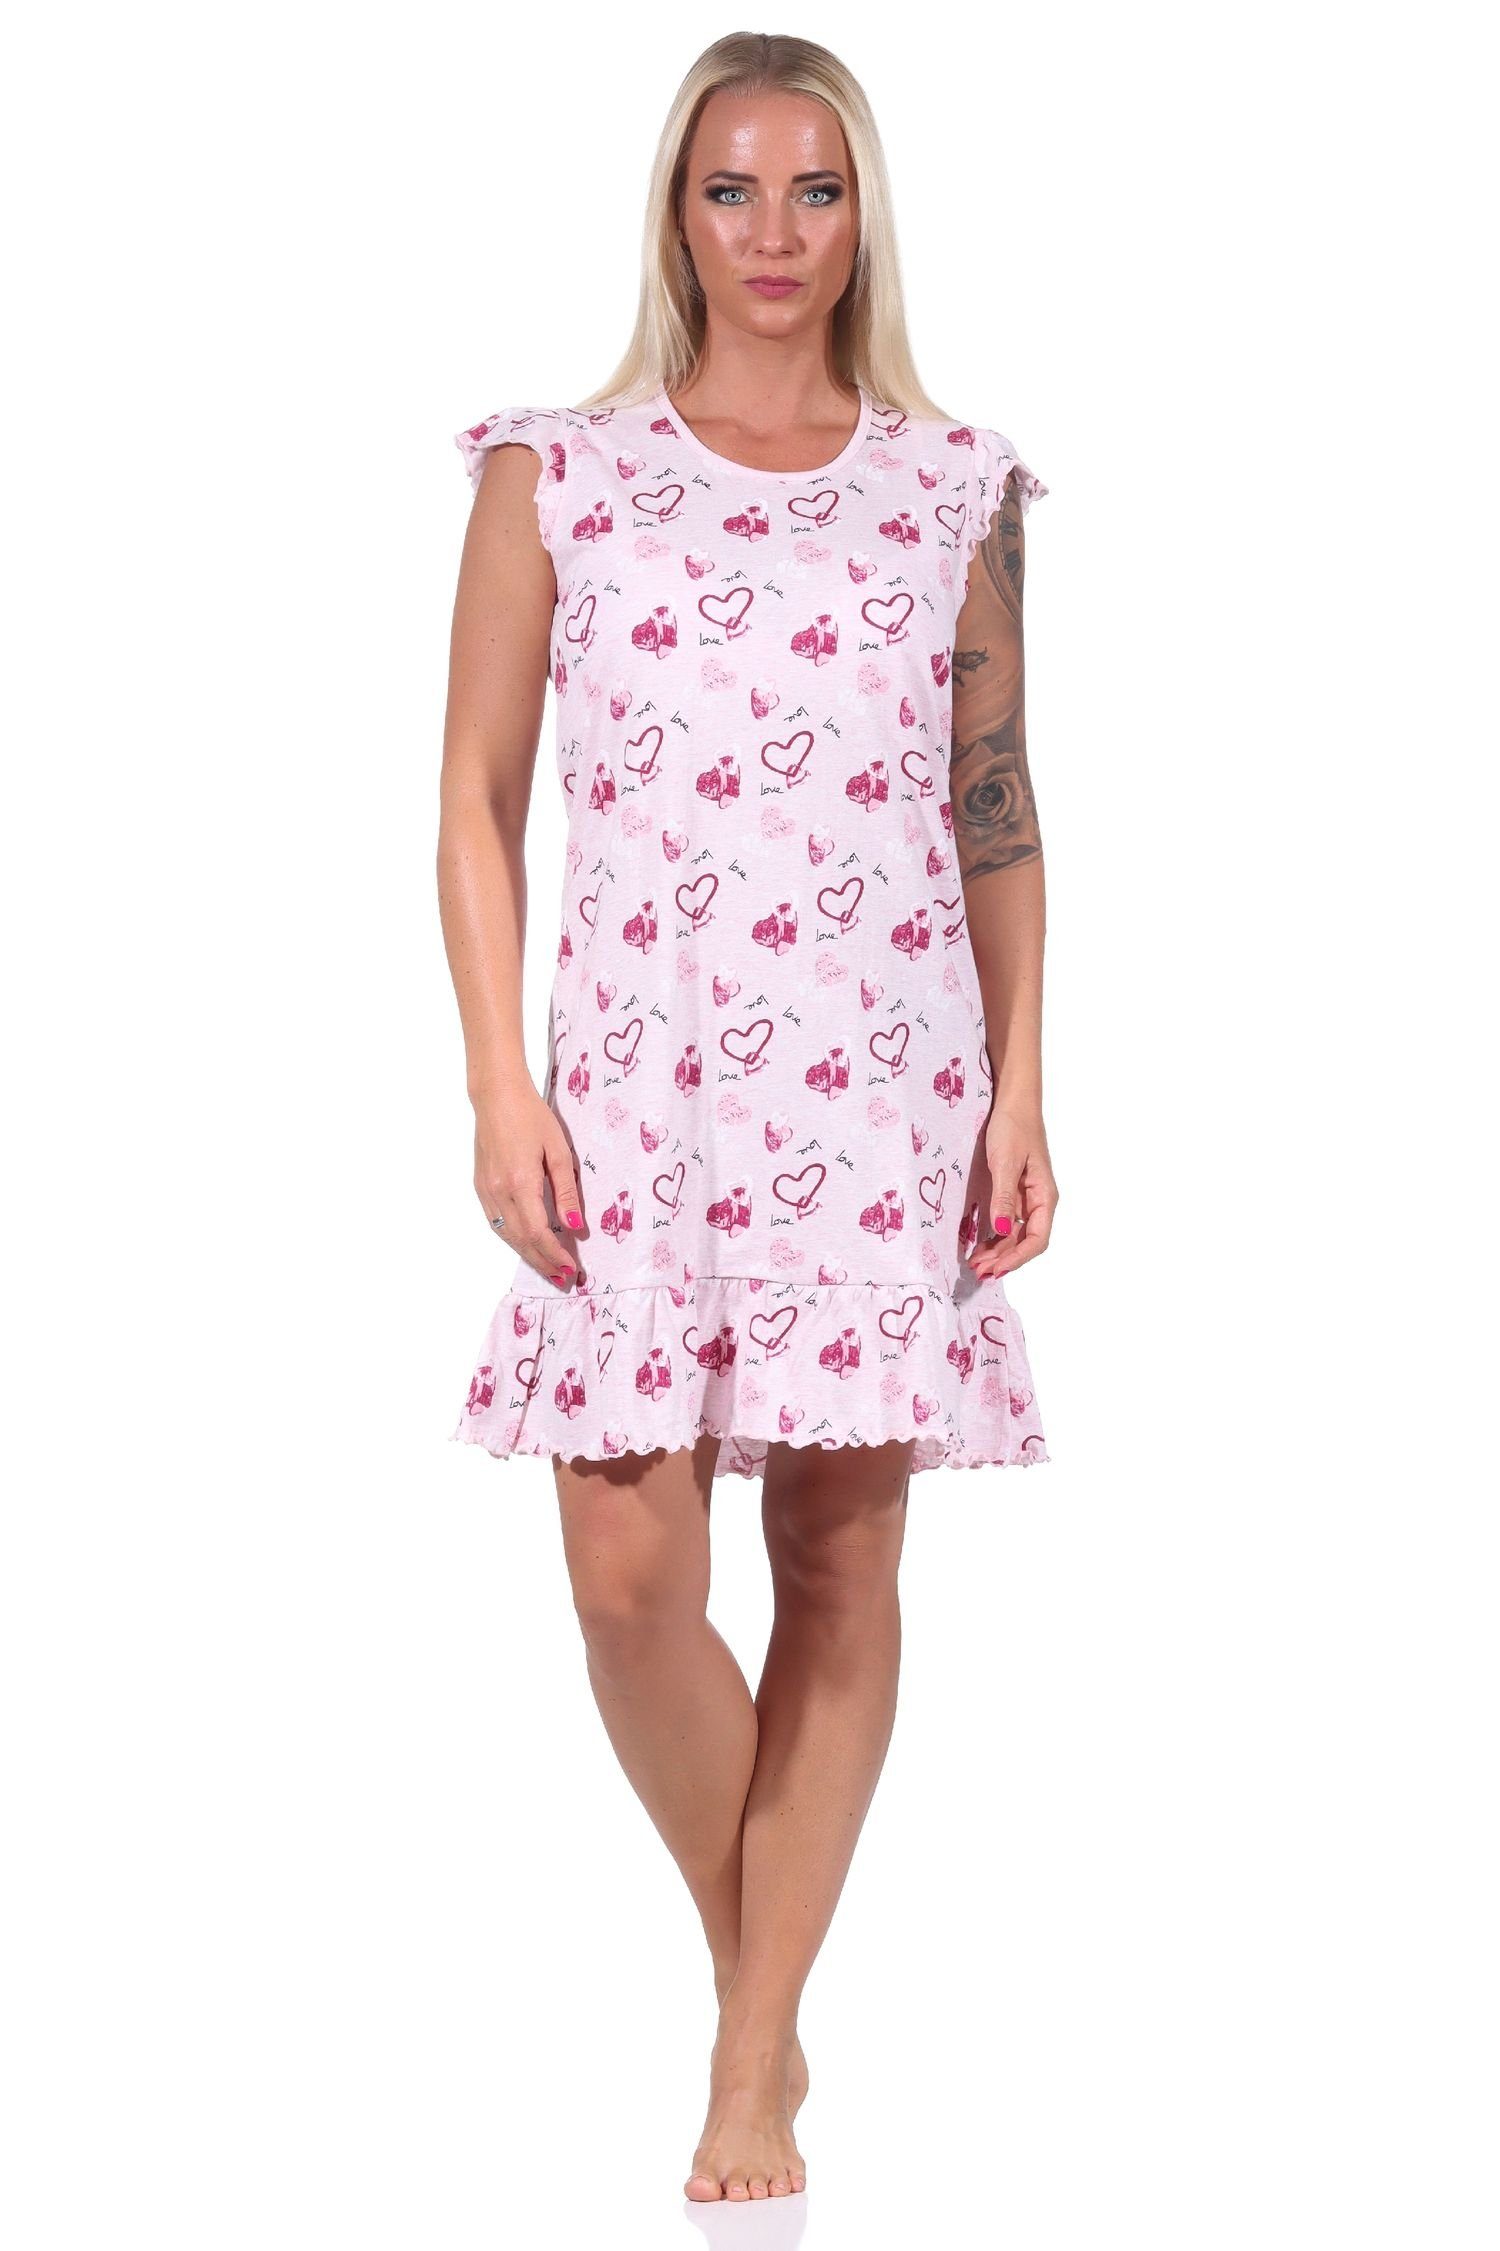 Normann Nachthemd Damen kurzarm Nachthemd in Herz Motiv Optik - auch in Übergrößen rosa